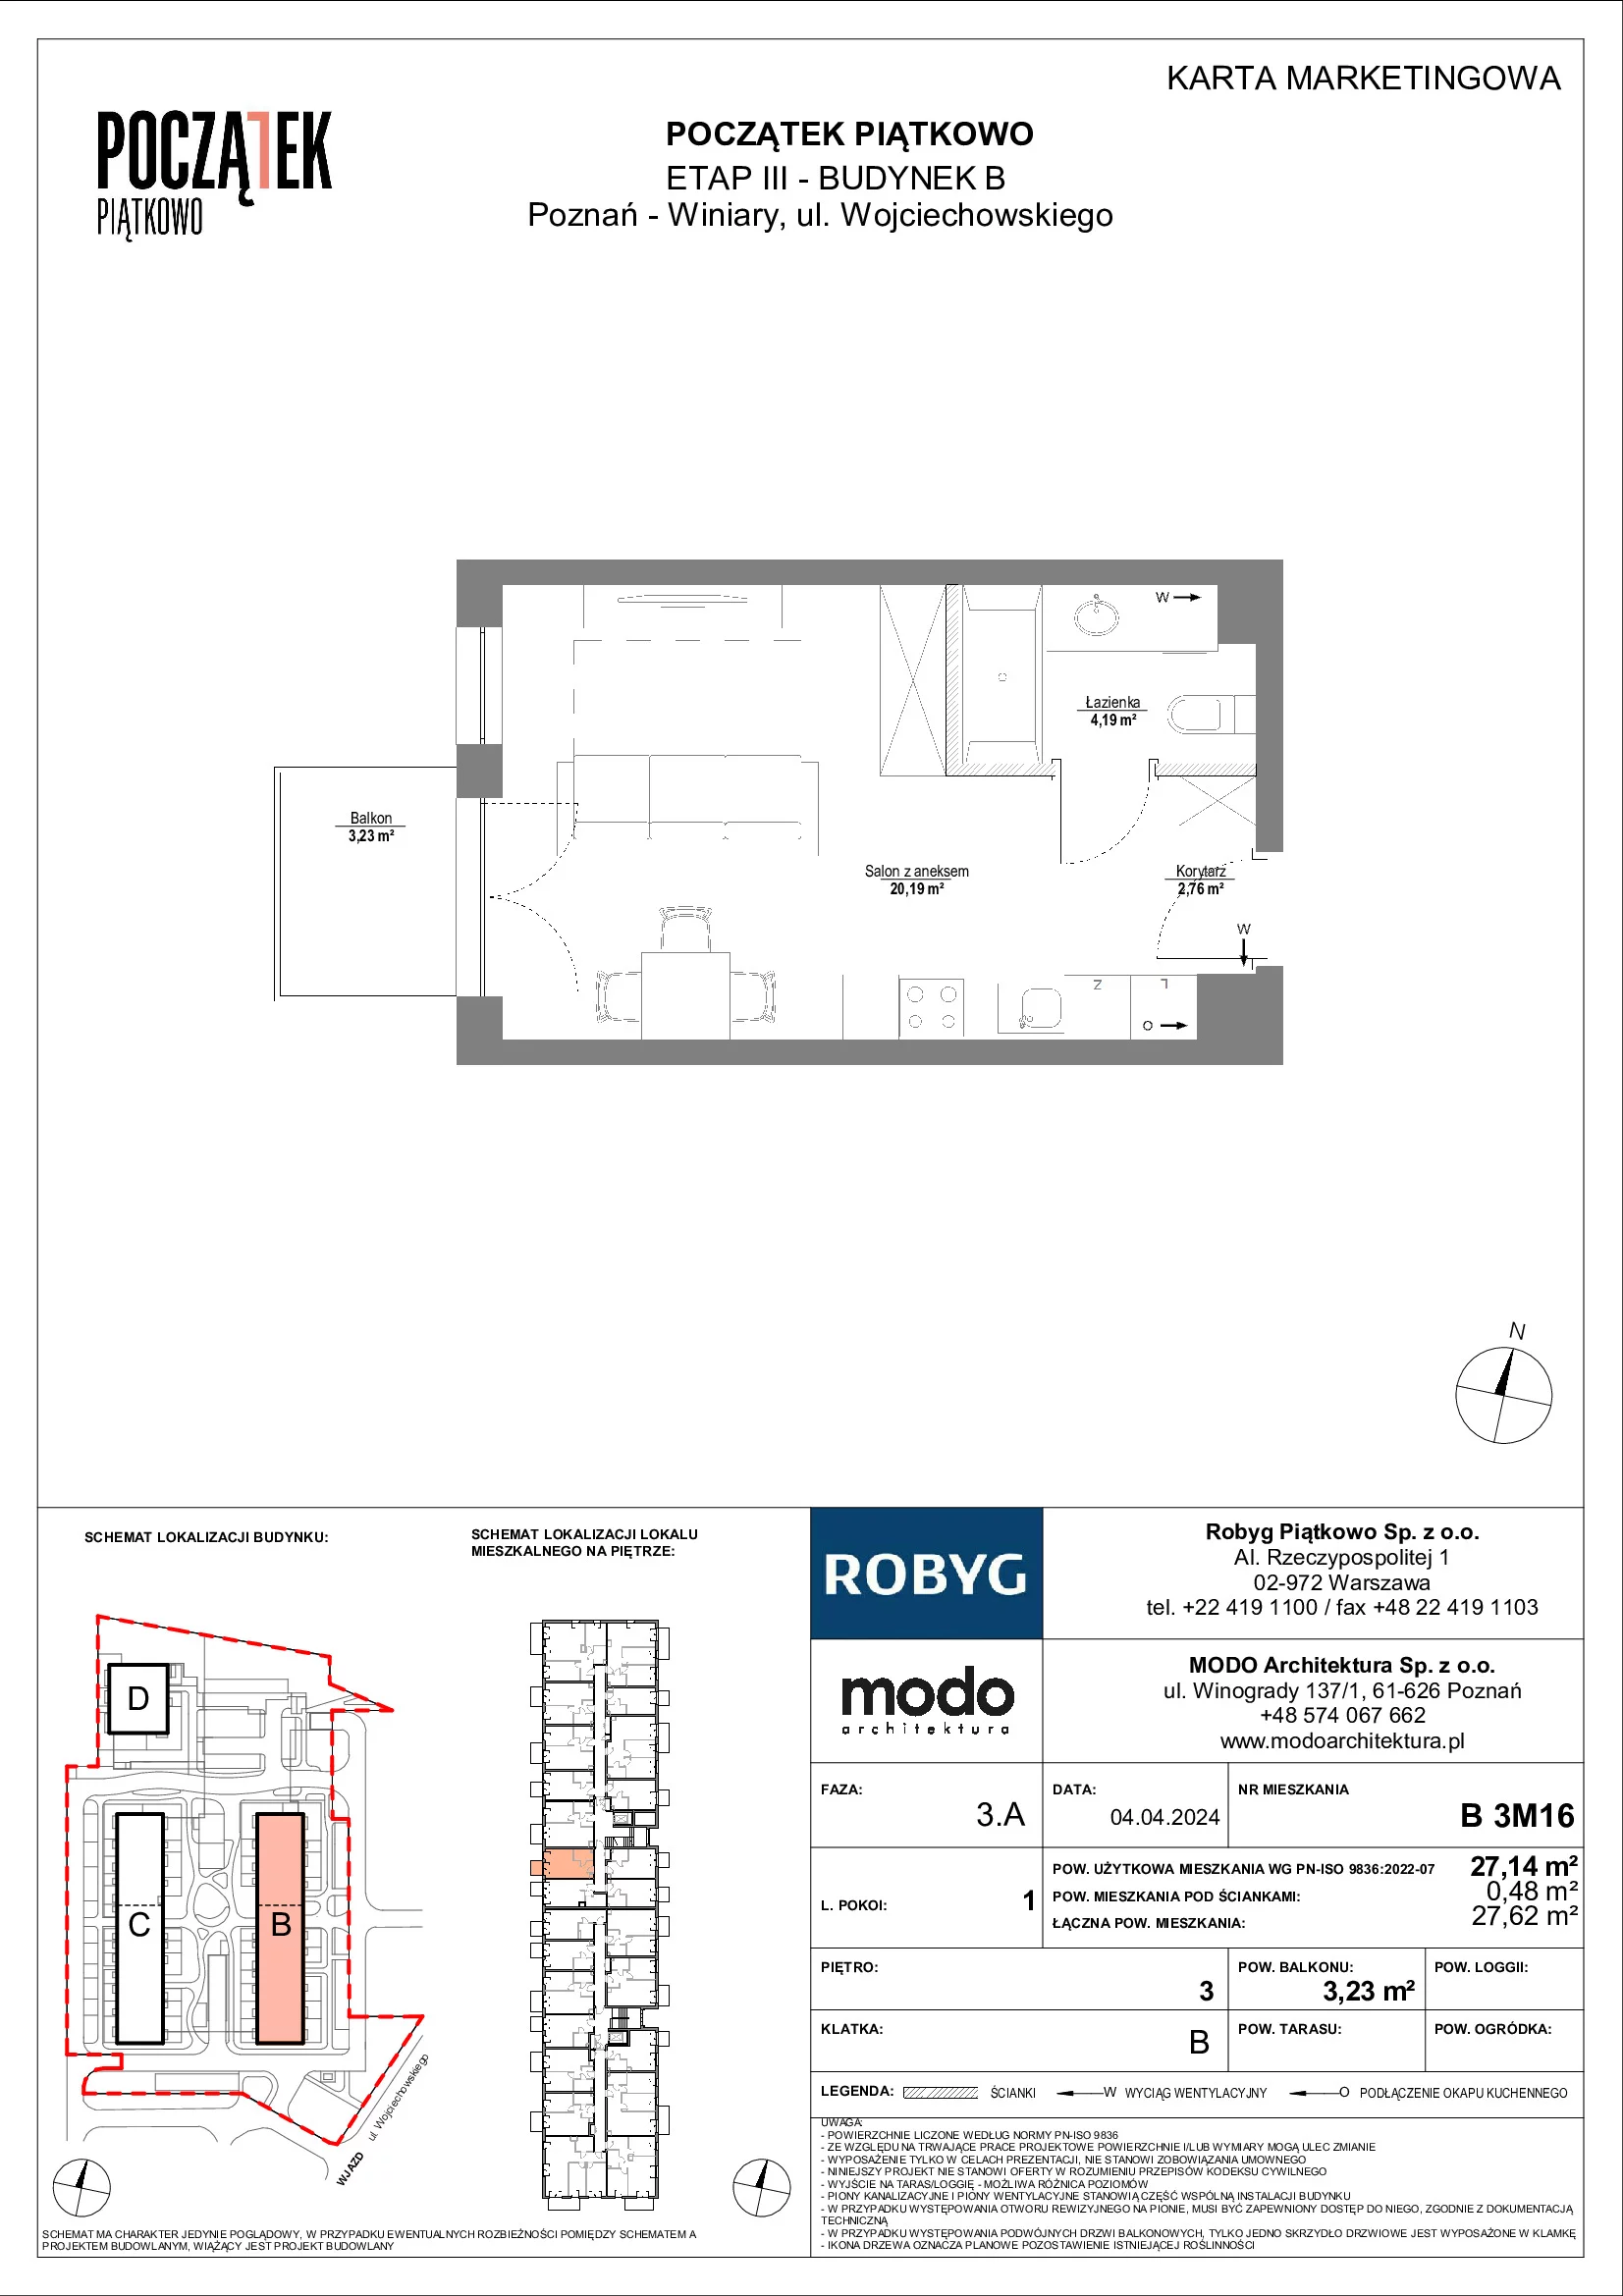 Mieszkanie 27,14 m², piętro 3, oferta nr B.3M16, Początek Piątkowo, Poznań, Piątkowo, ul. Wojciechowskiego